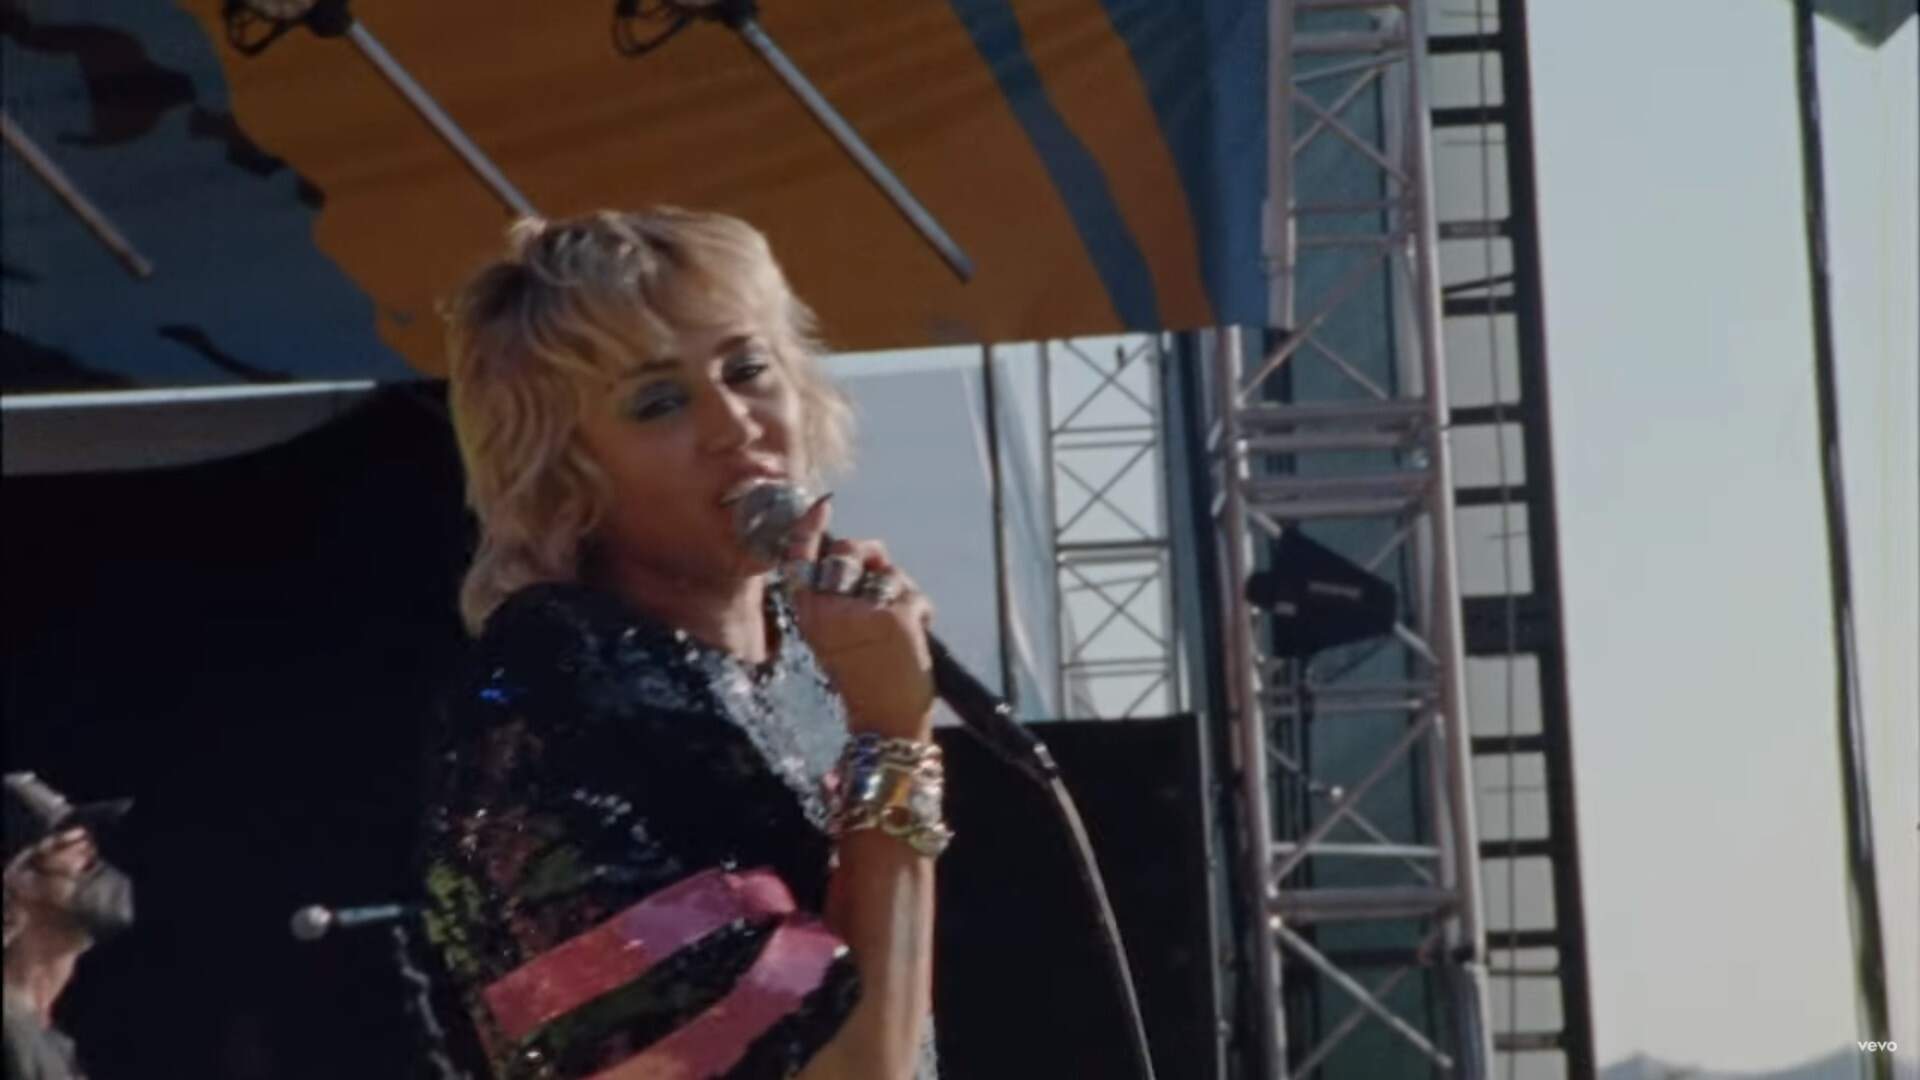 De surpresa, Miley Cyrus lança clipe de “Angels Like You” com mensagem importante - Metropolitana FM